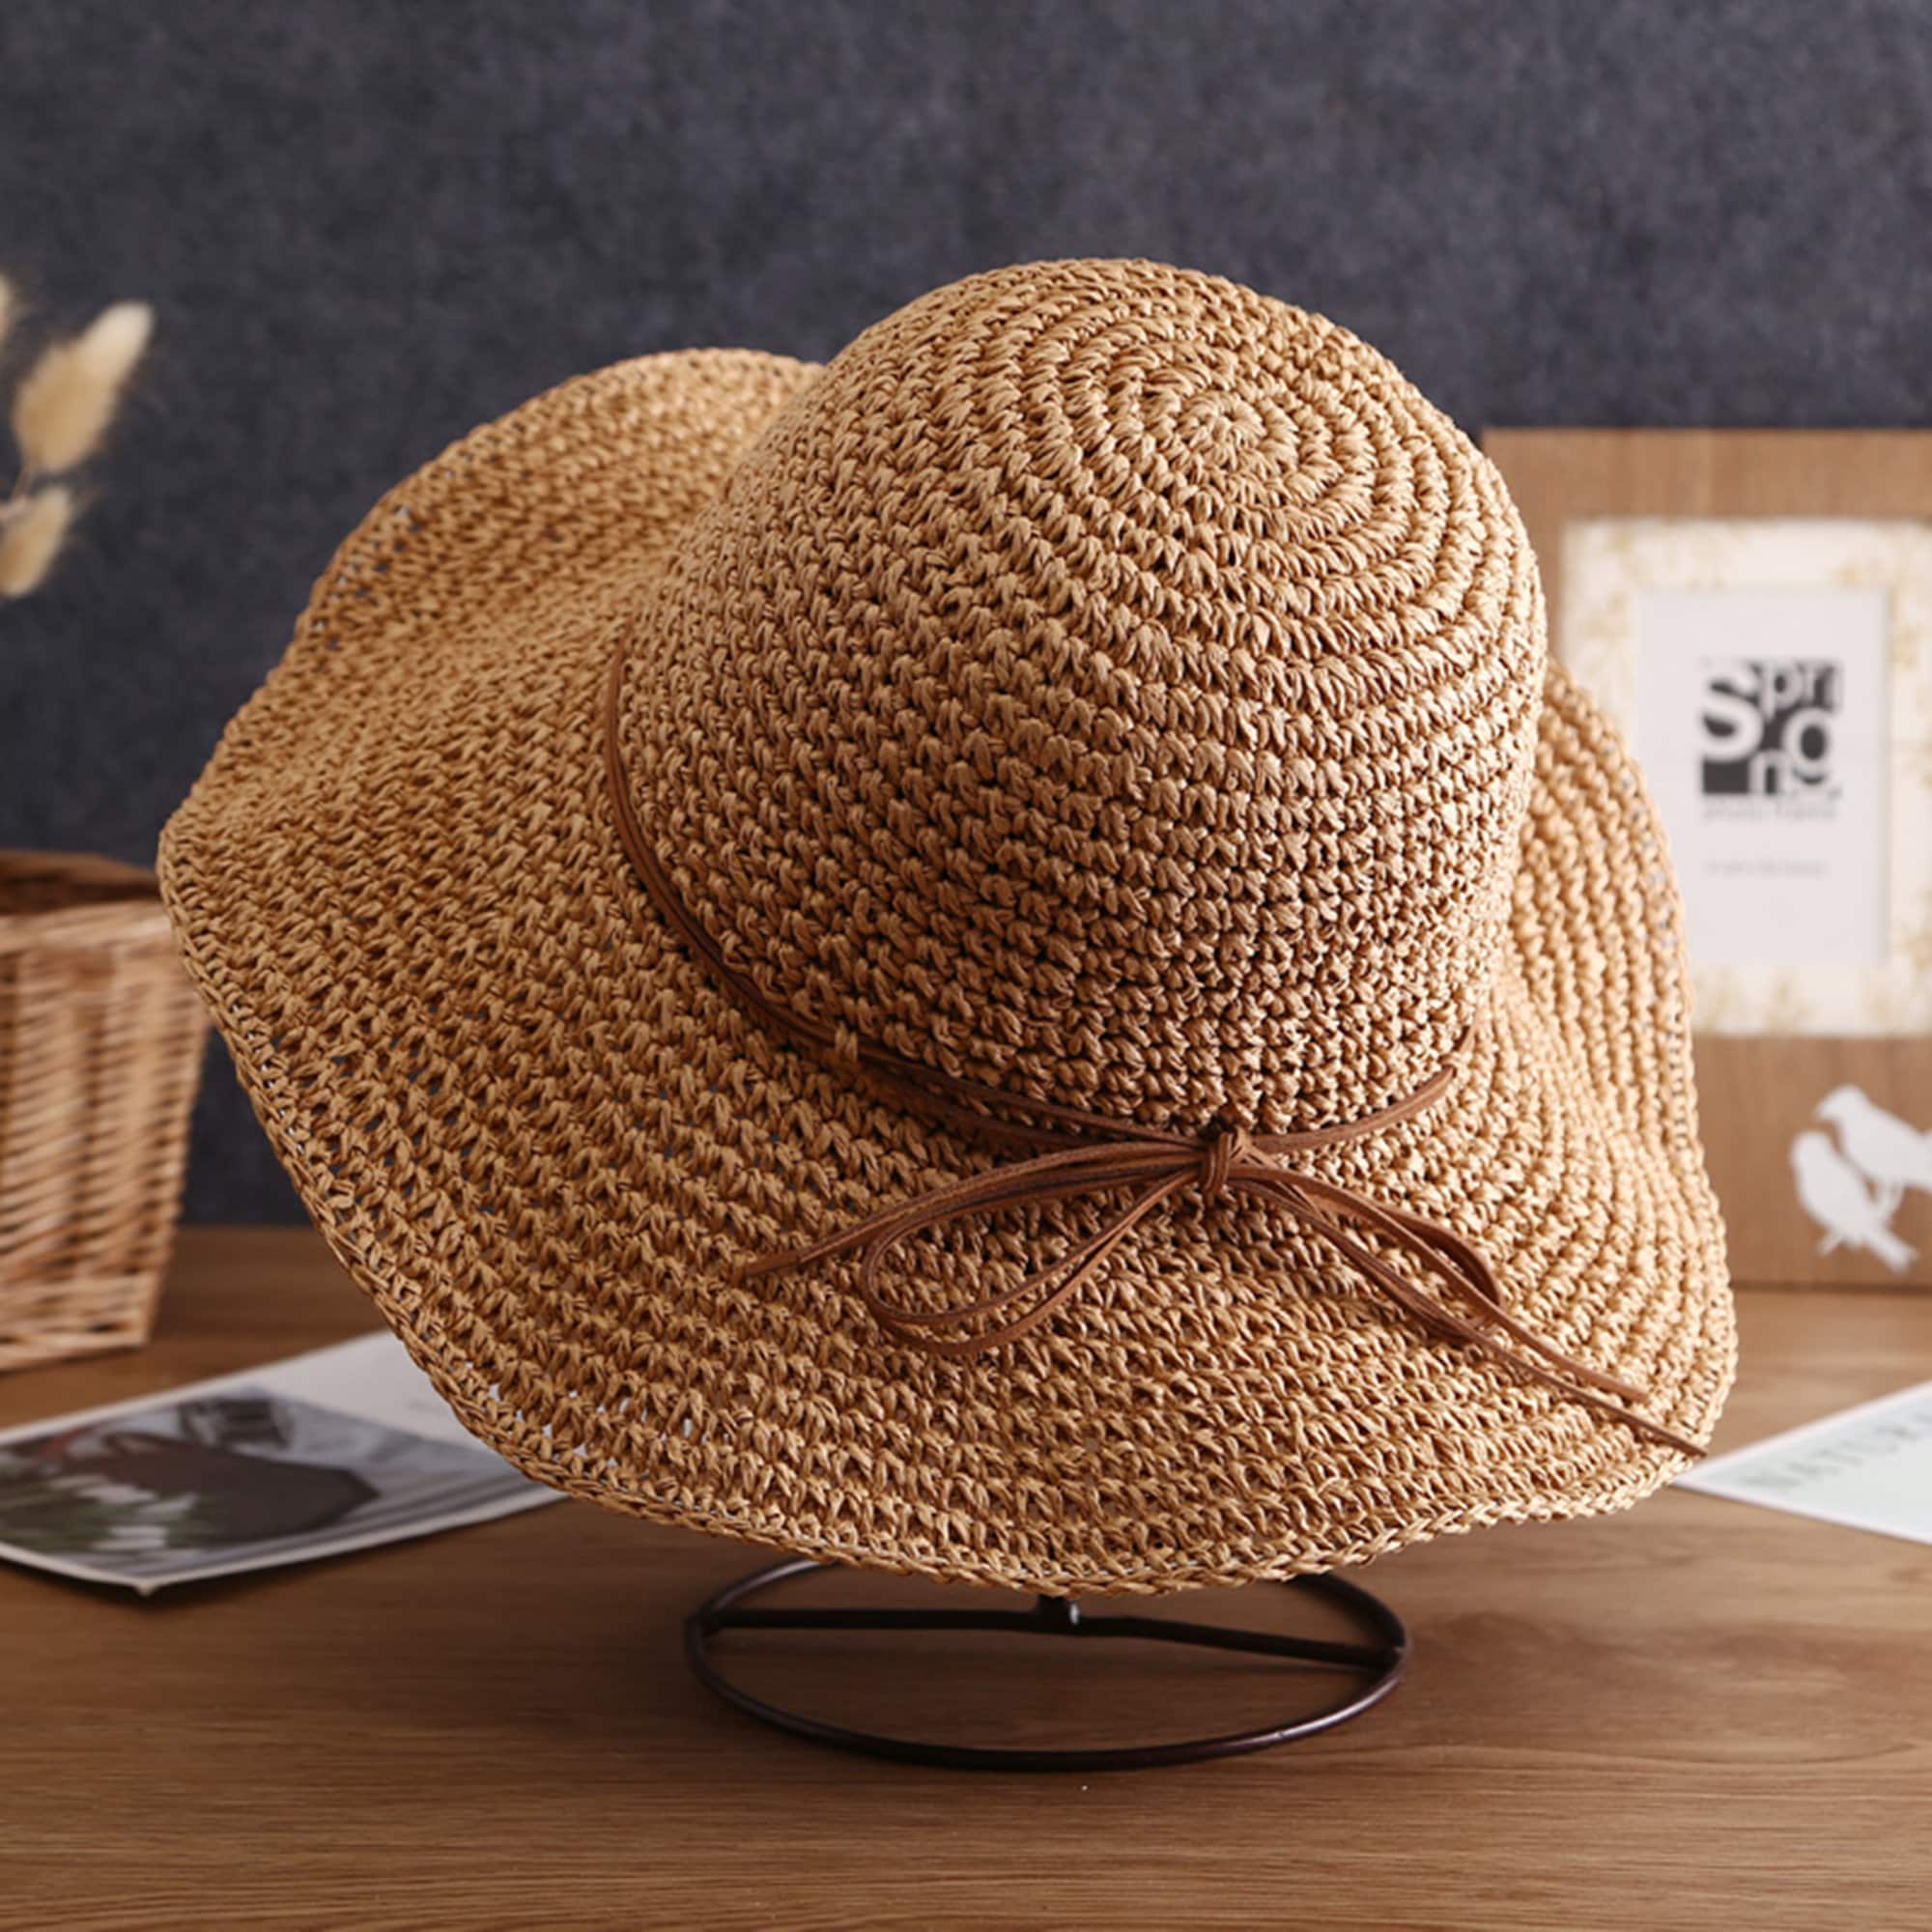 Buy Folding Straw Hat , Wide Brim Floppy Summer Hats , Woman Seaside Beach  Hat, Sun Hat Online in India 